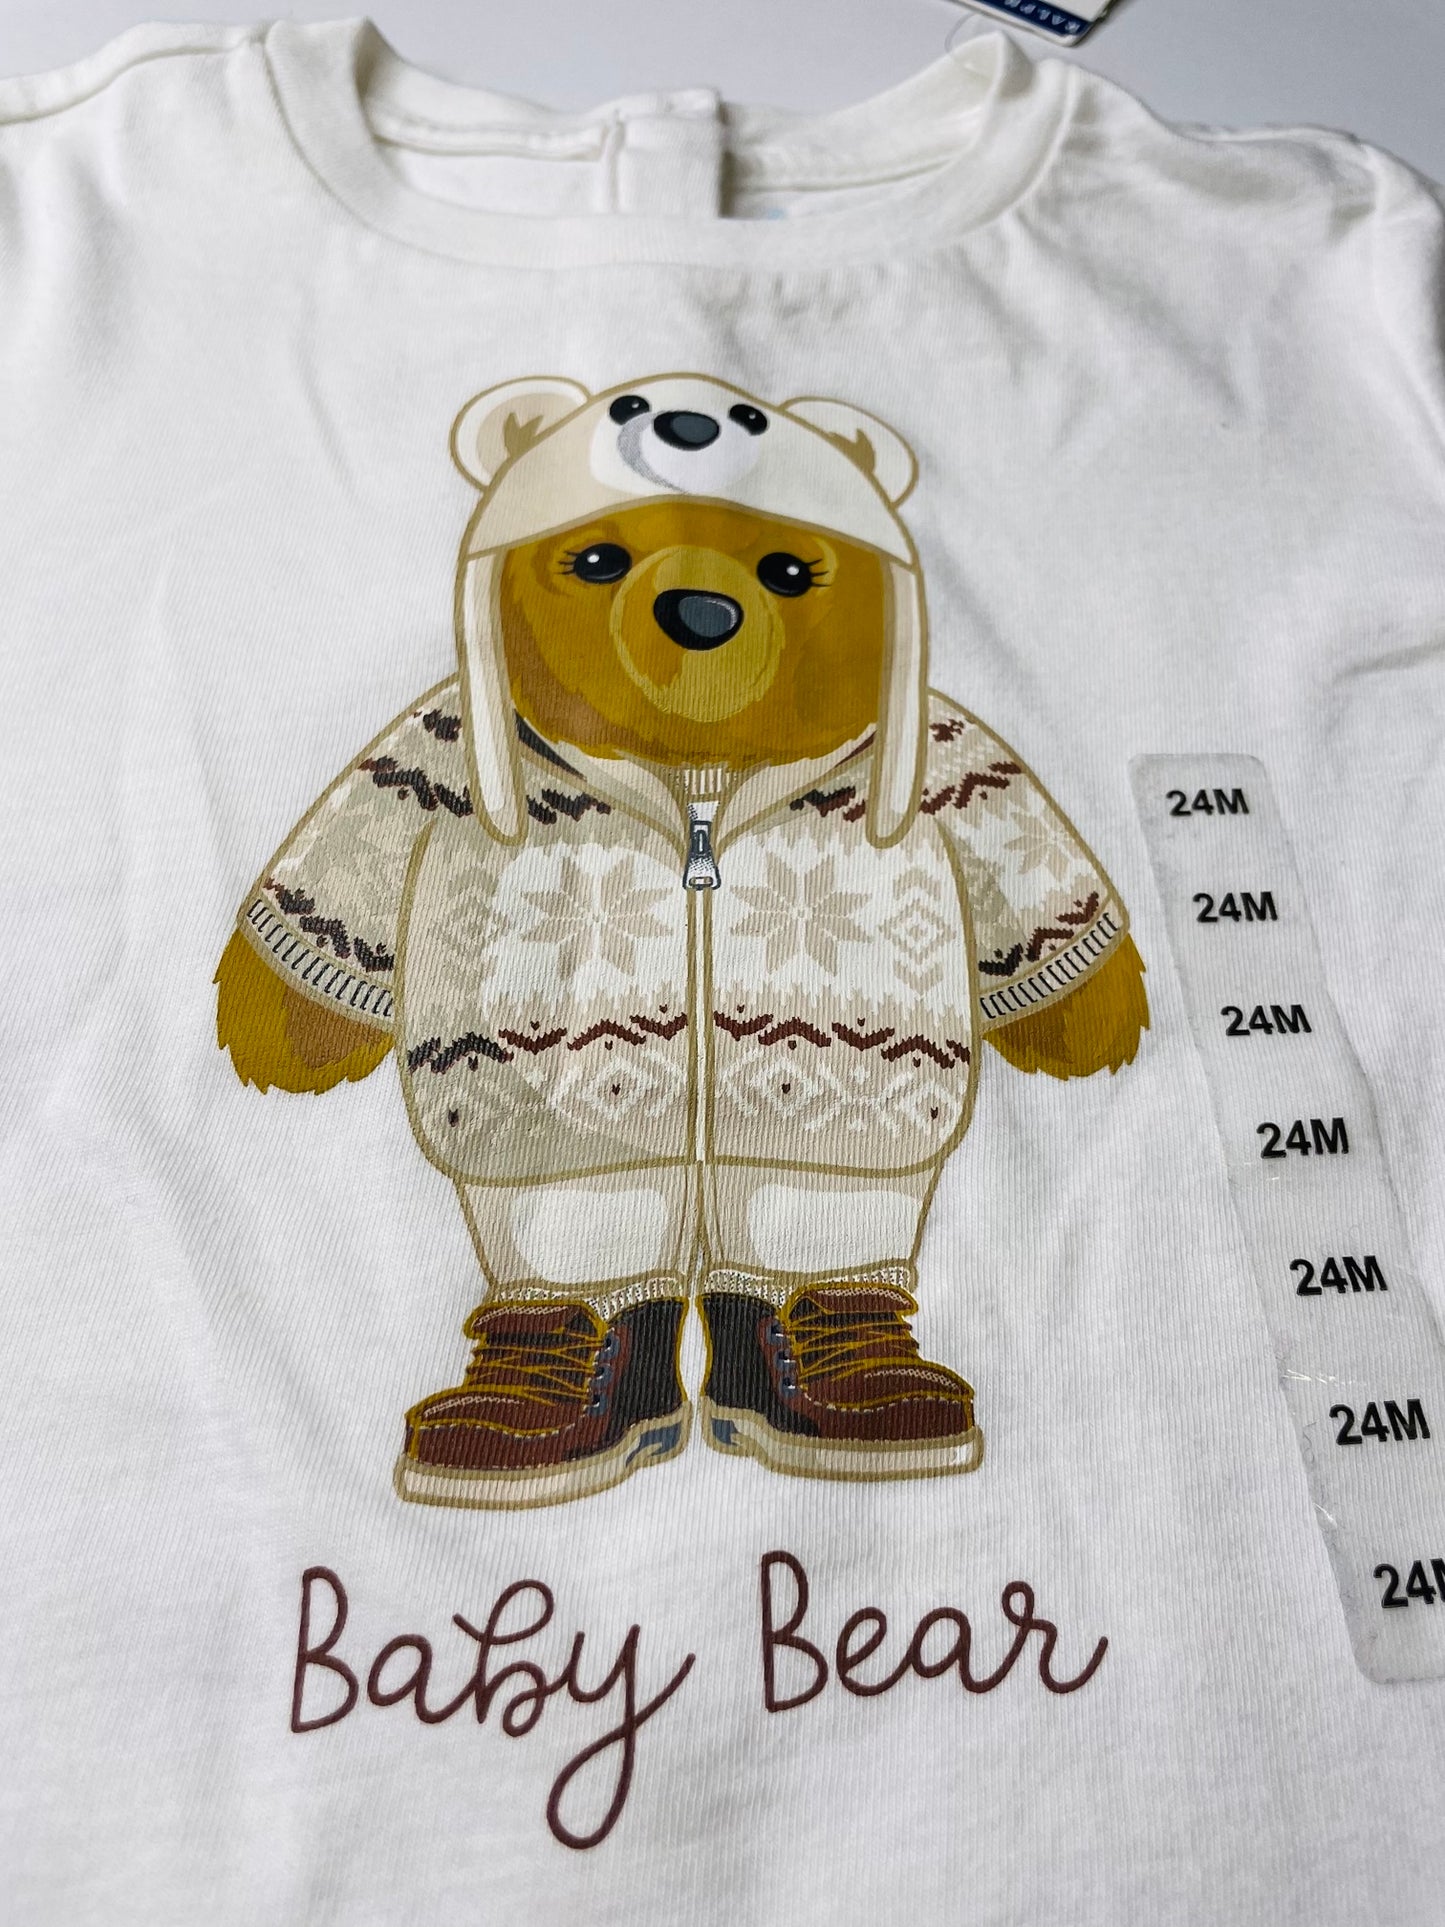 Ralph Lauren shirt for kids